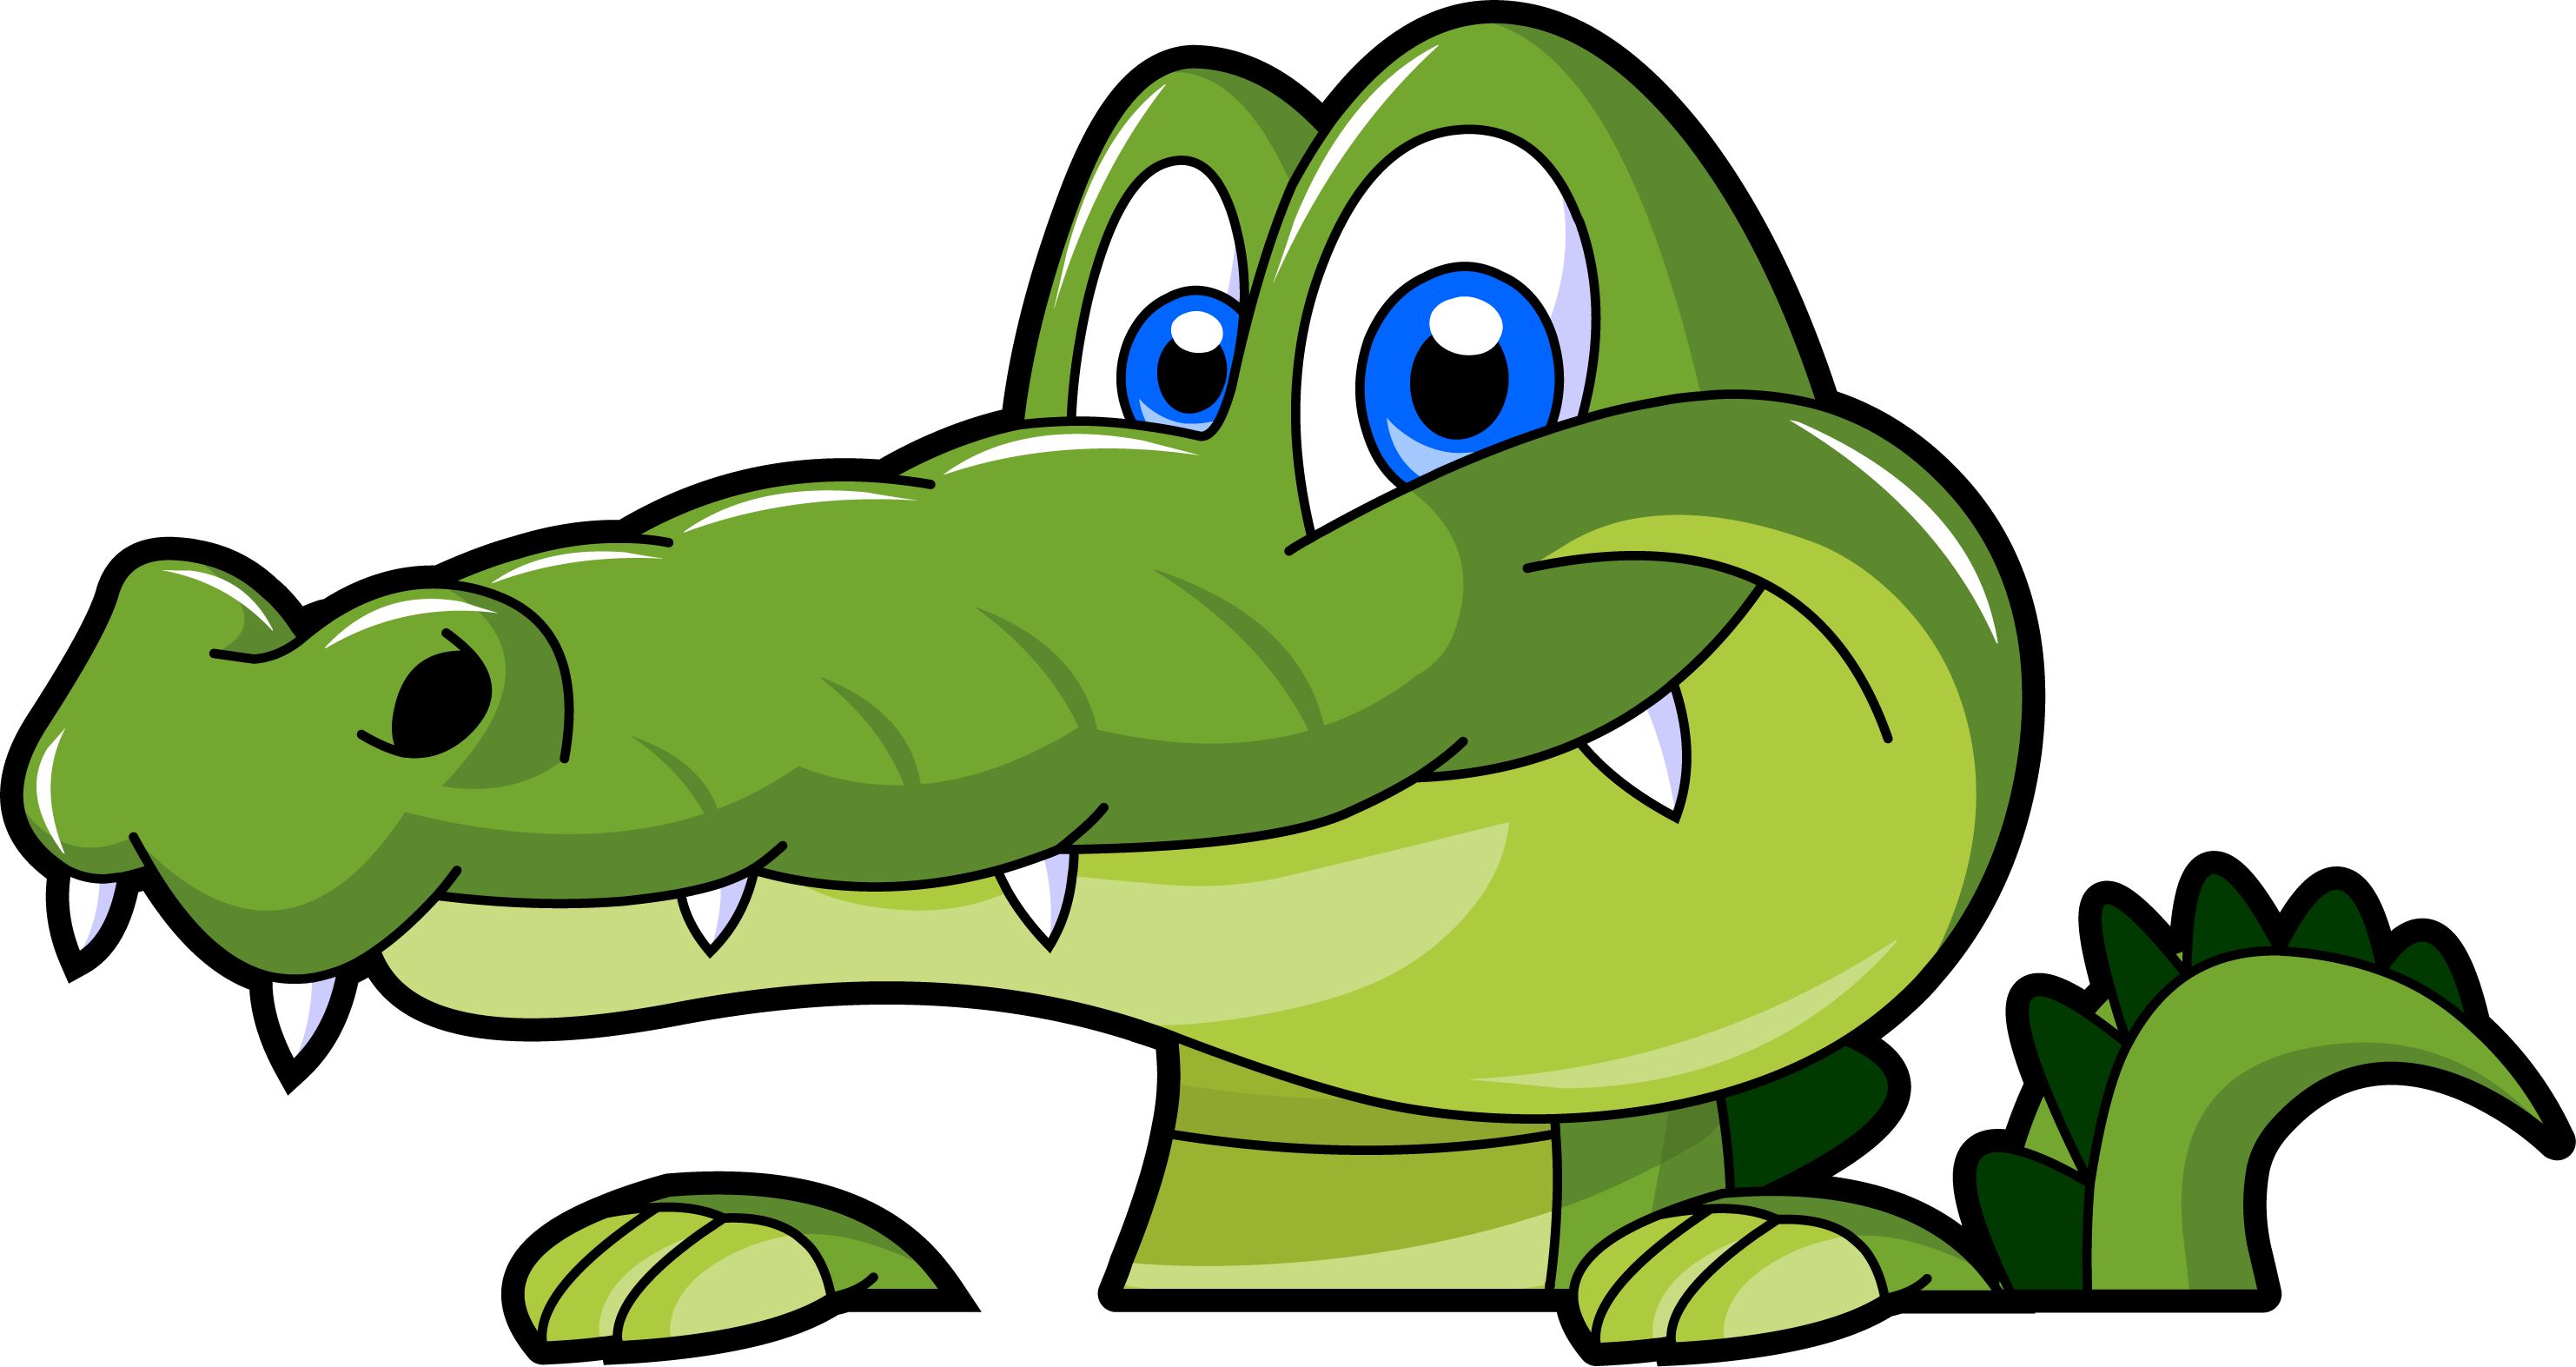 Swamp alligator cartoon clipart image - Clipartix